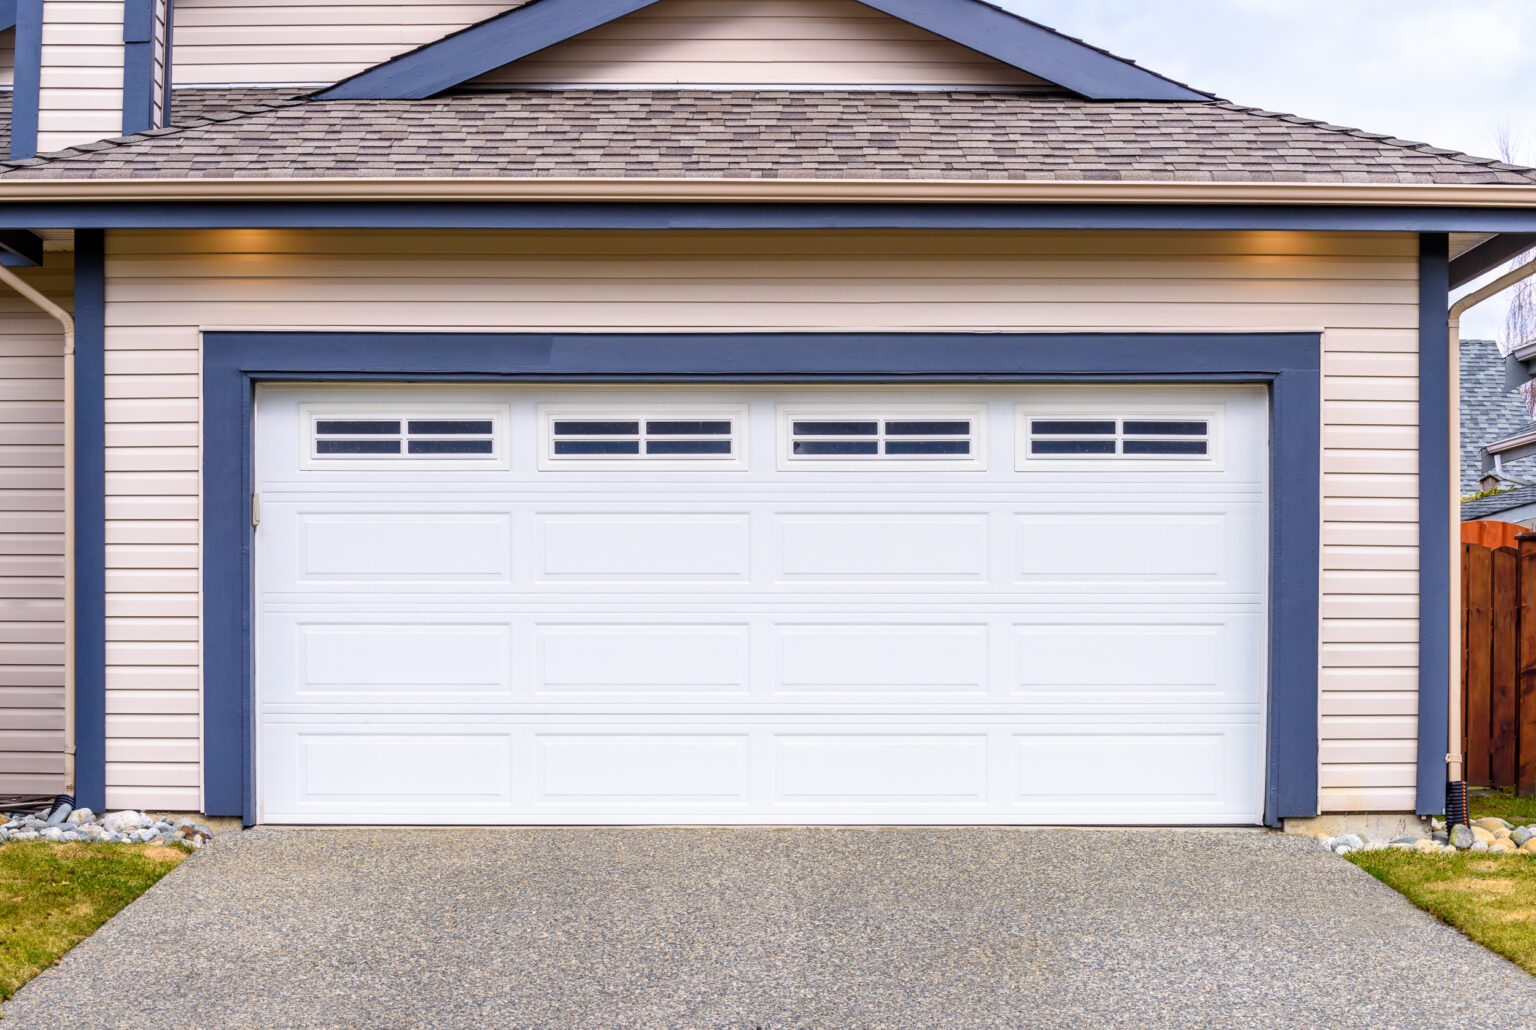 How much is a new garage door?